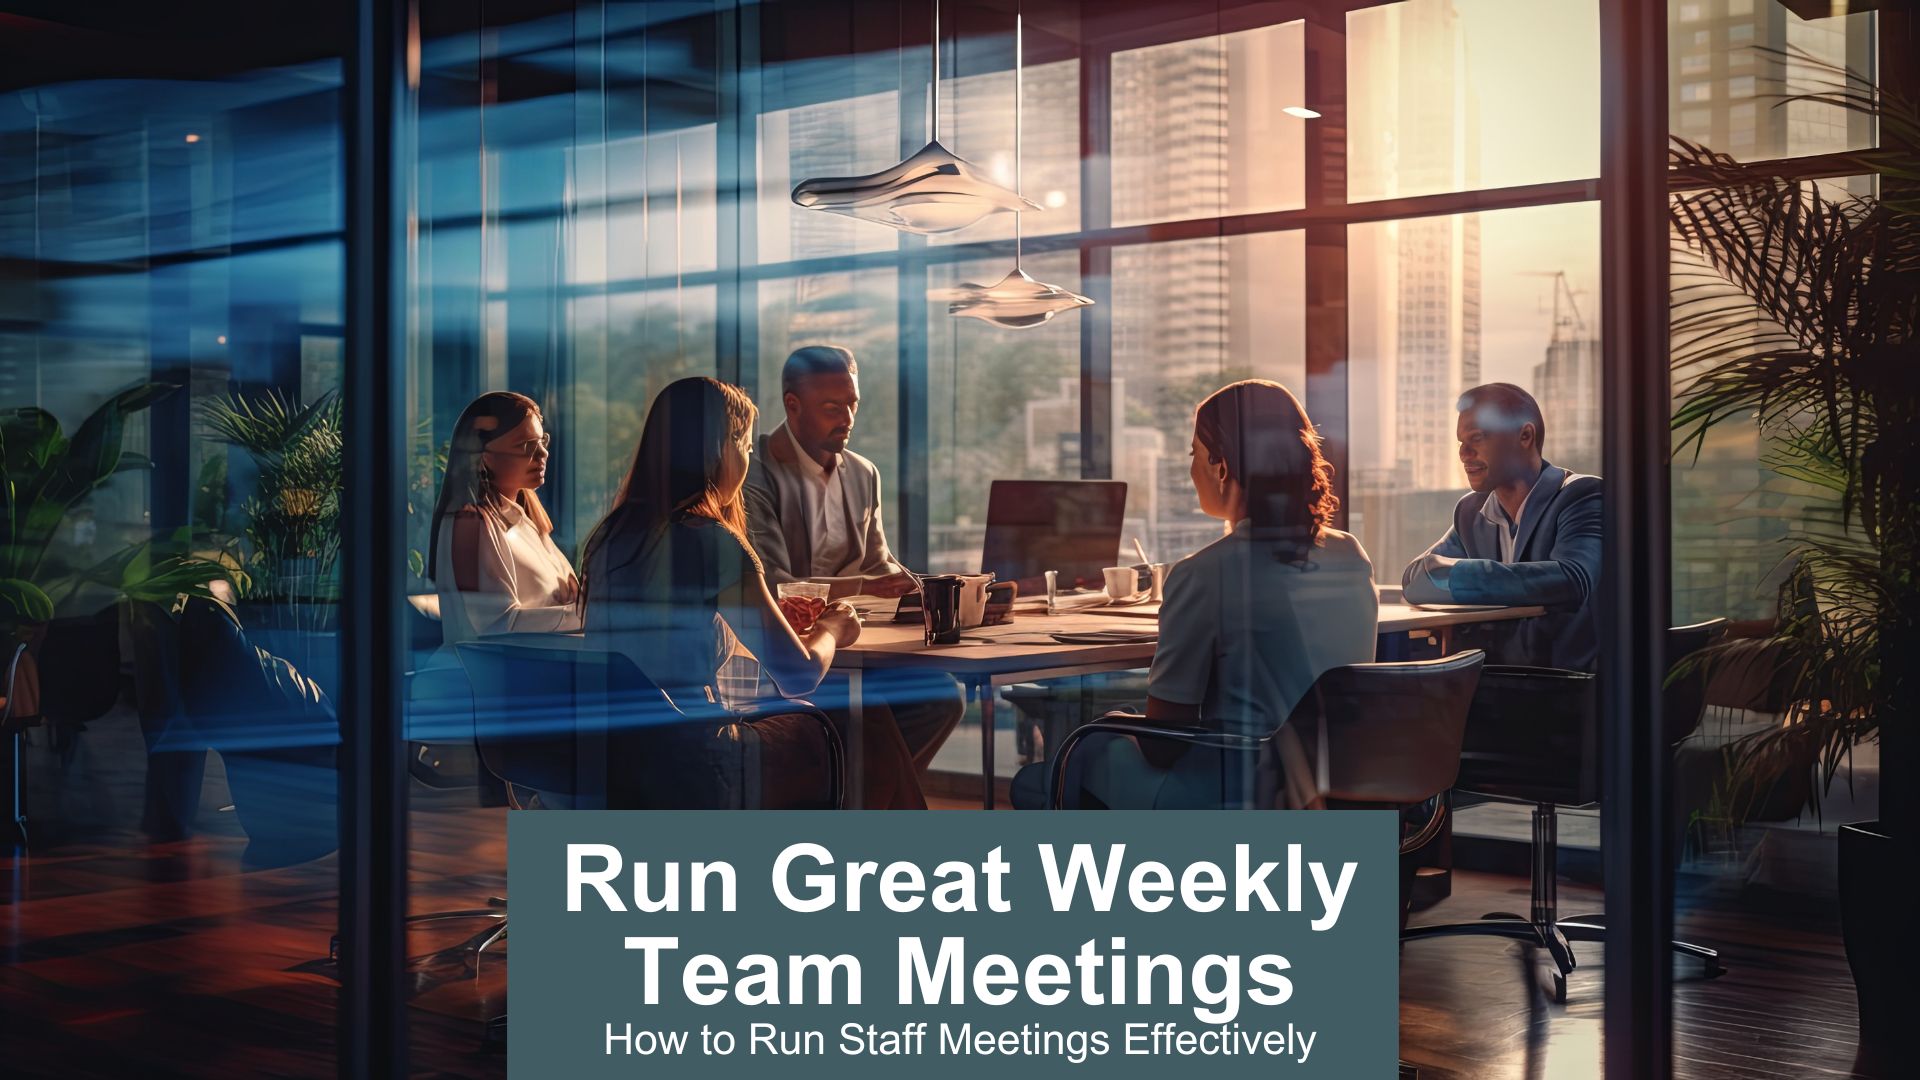 Run great weekly team meetings - how to run staff meetings effectively